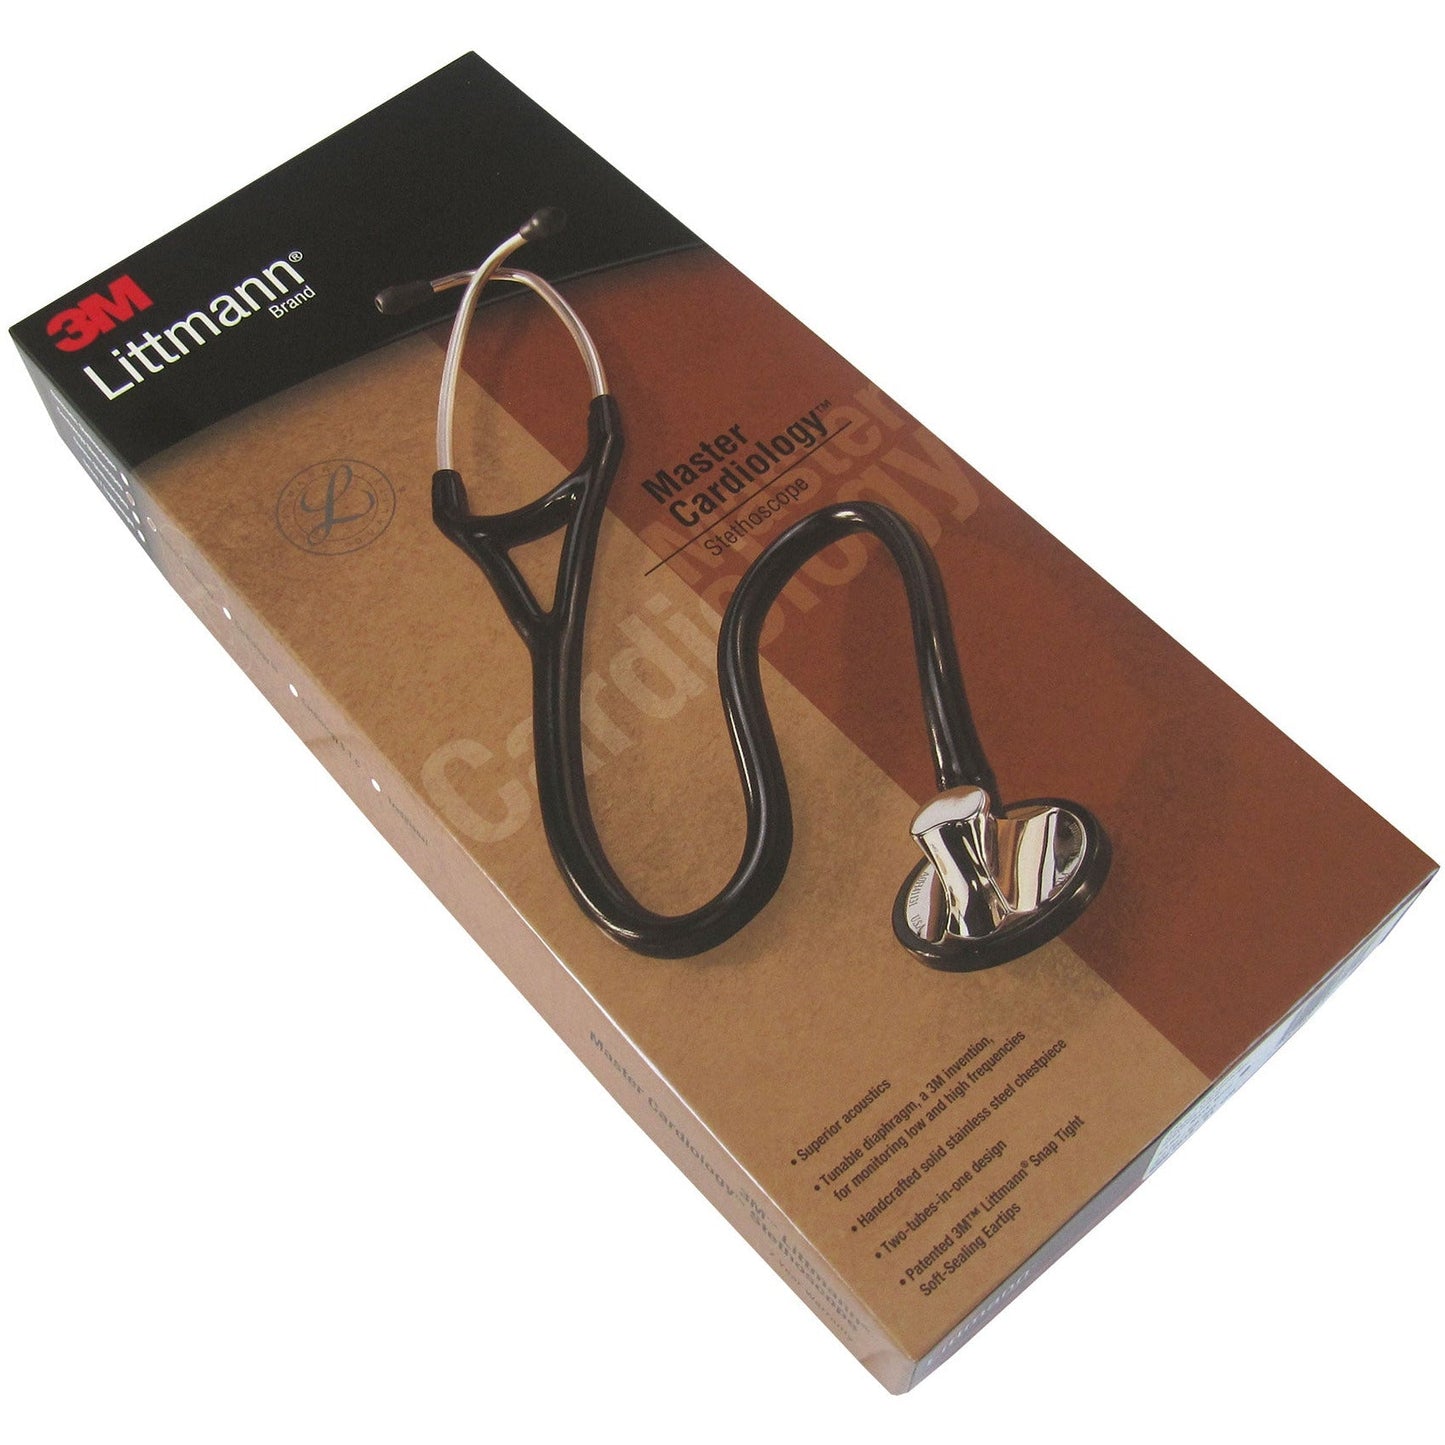 Stetoskopju Littmann Master Cardiology: Iswed 2160